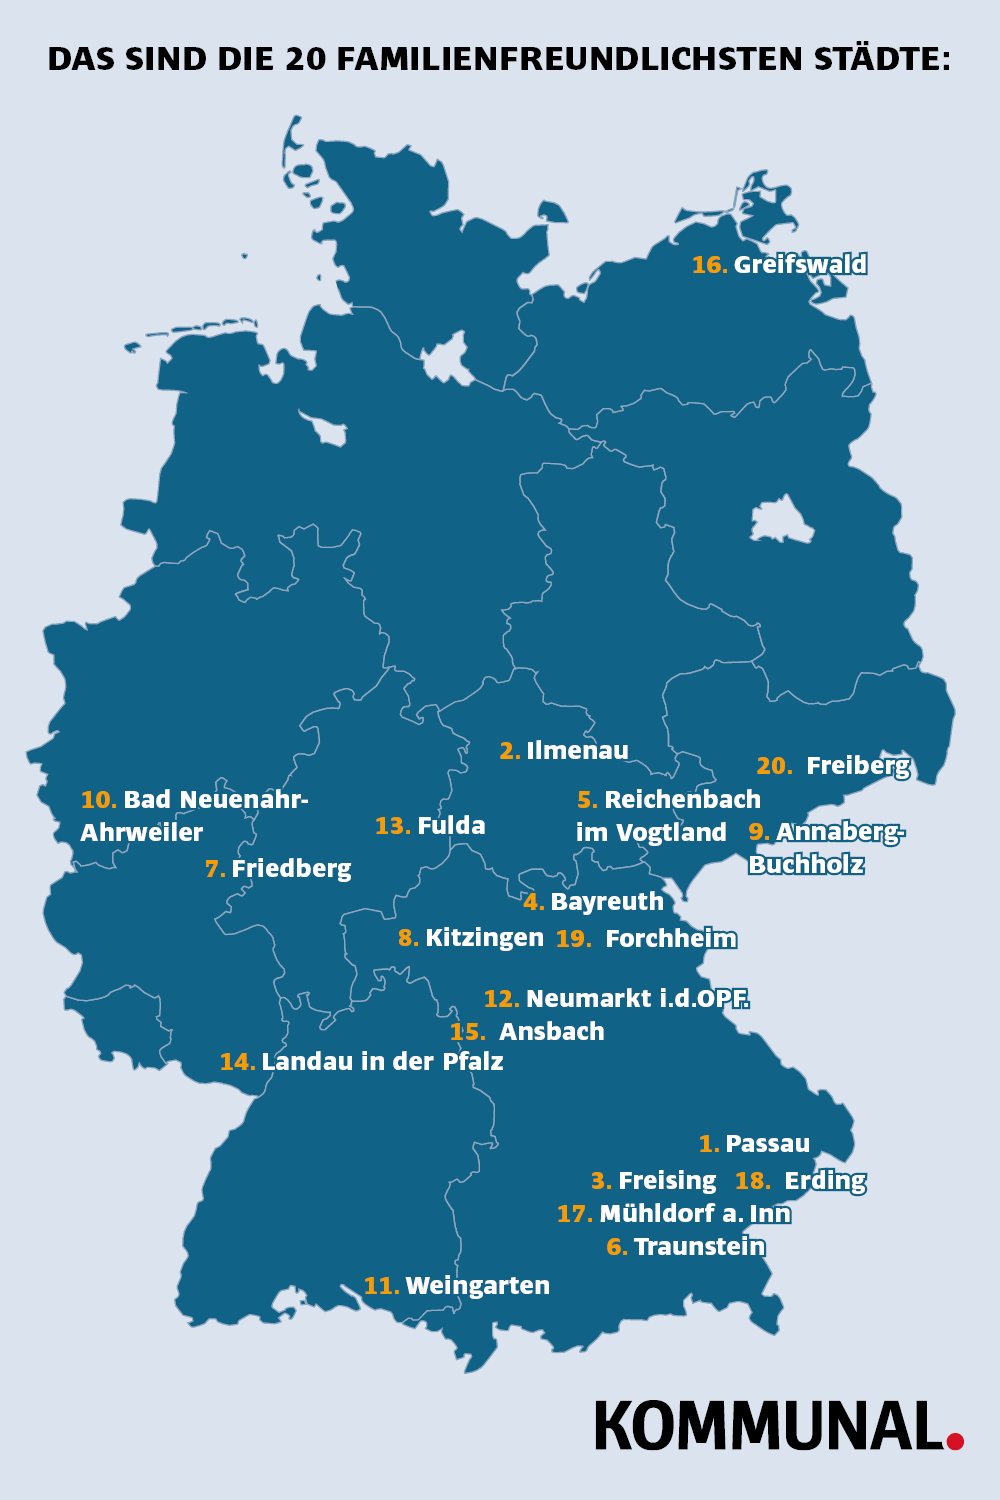 Die familienfreundlichsten Städte Deutschlands